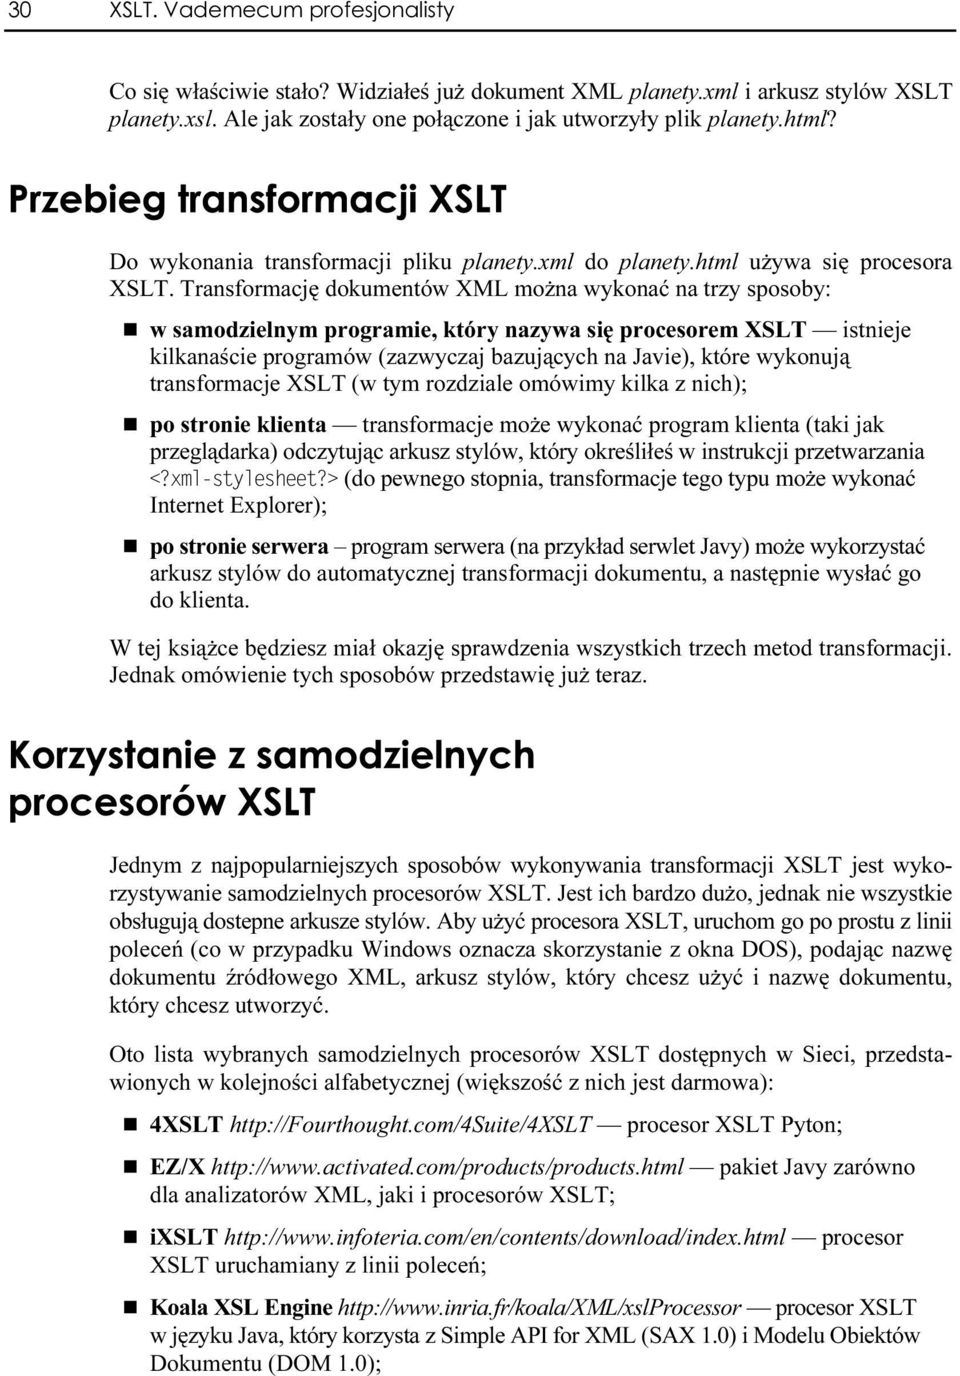 Transformację dokumentów XML można wykonać na trezy sposoby: w samodzielnym programie, który nazywa się procesorem XSLT istnieje kilkanaście programów (zazwyczaj bazujących na Javie), ektóre wykonują